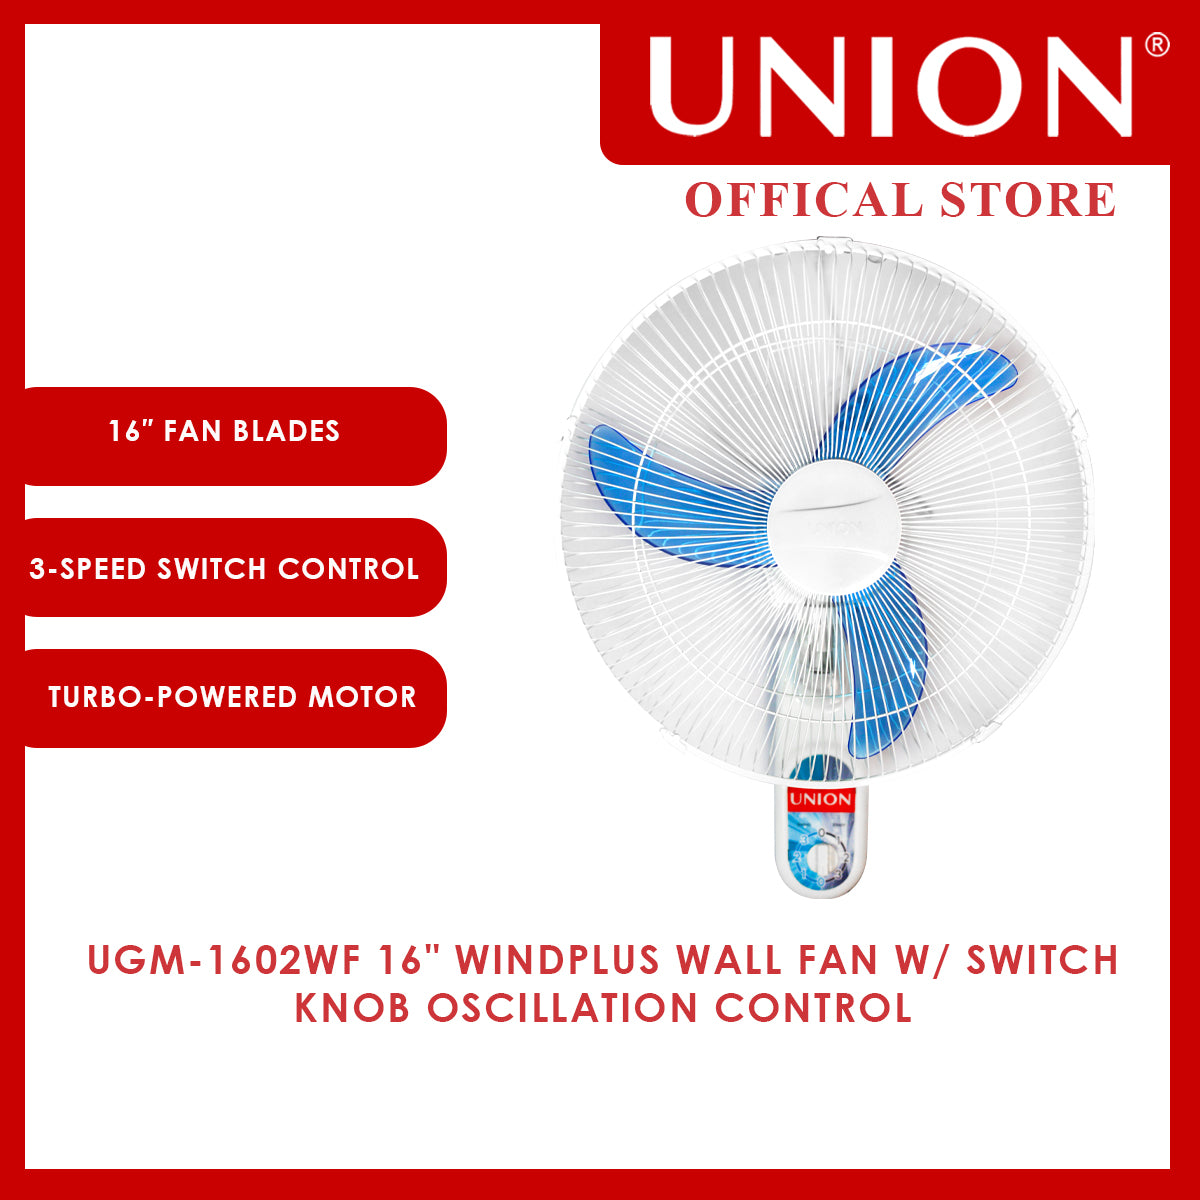 Union® 16" WINDplus Wall Fan